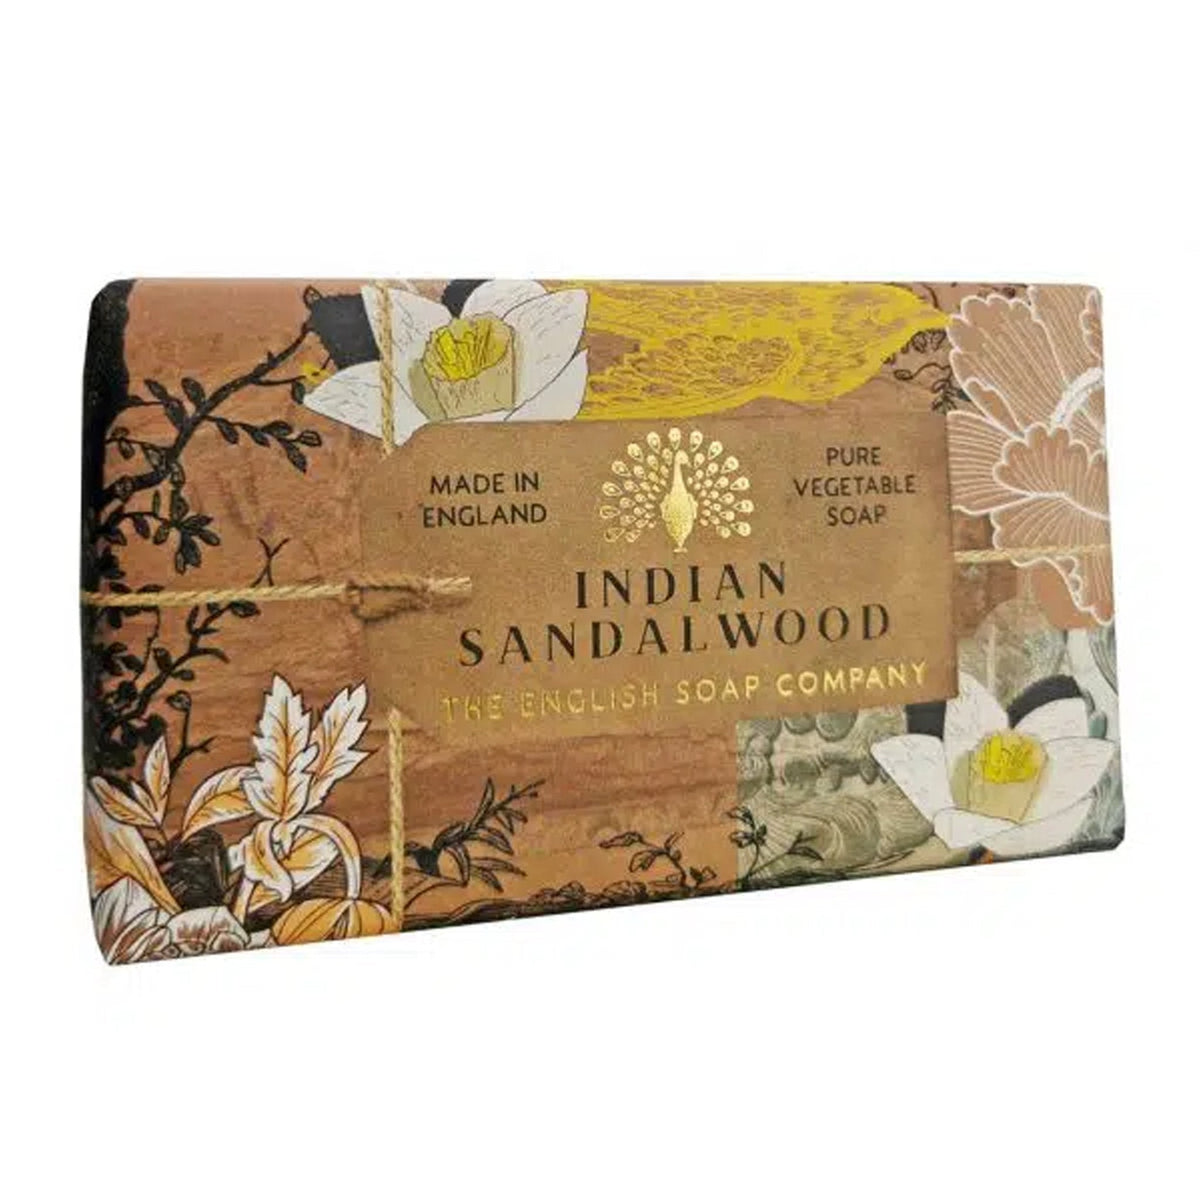 Indian Sandalwood Soap - Boo•kay ldn